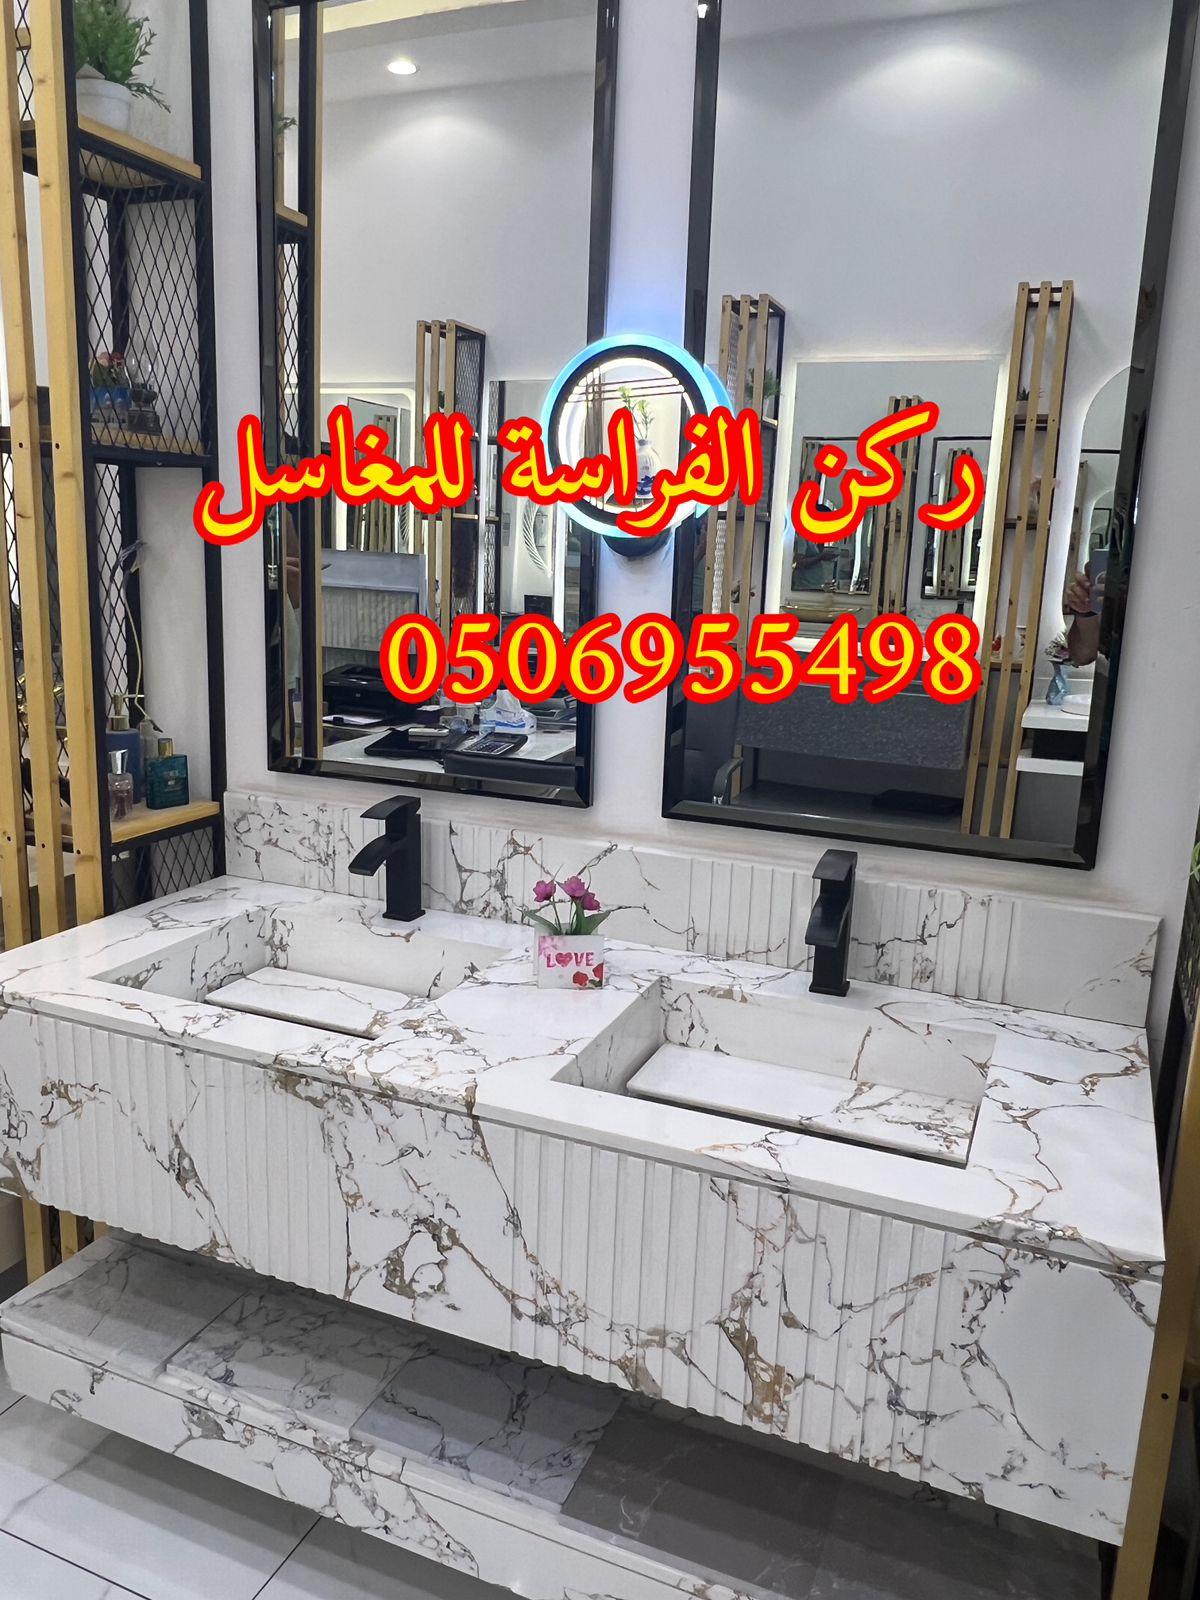 تركيب مغاسل حمامات رخام في الرياض, 0506955498 264446808